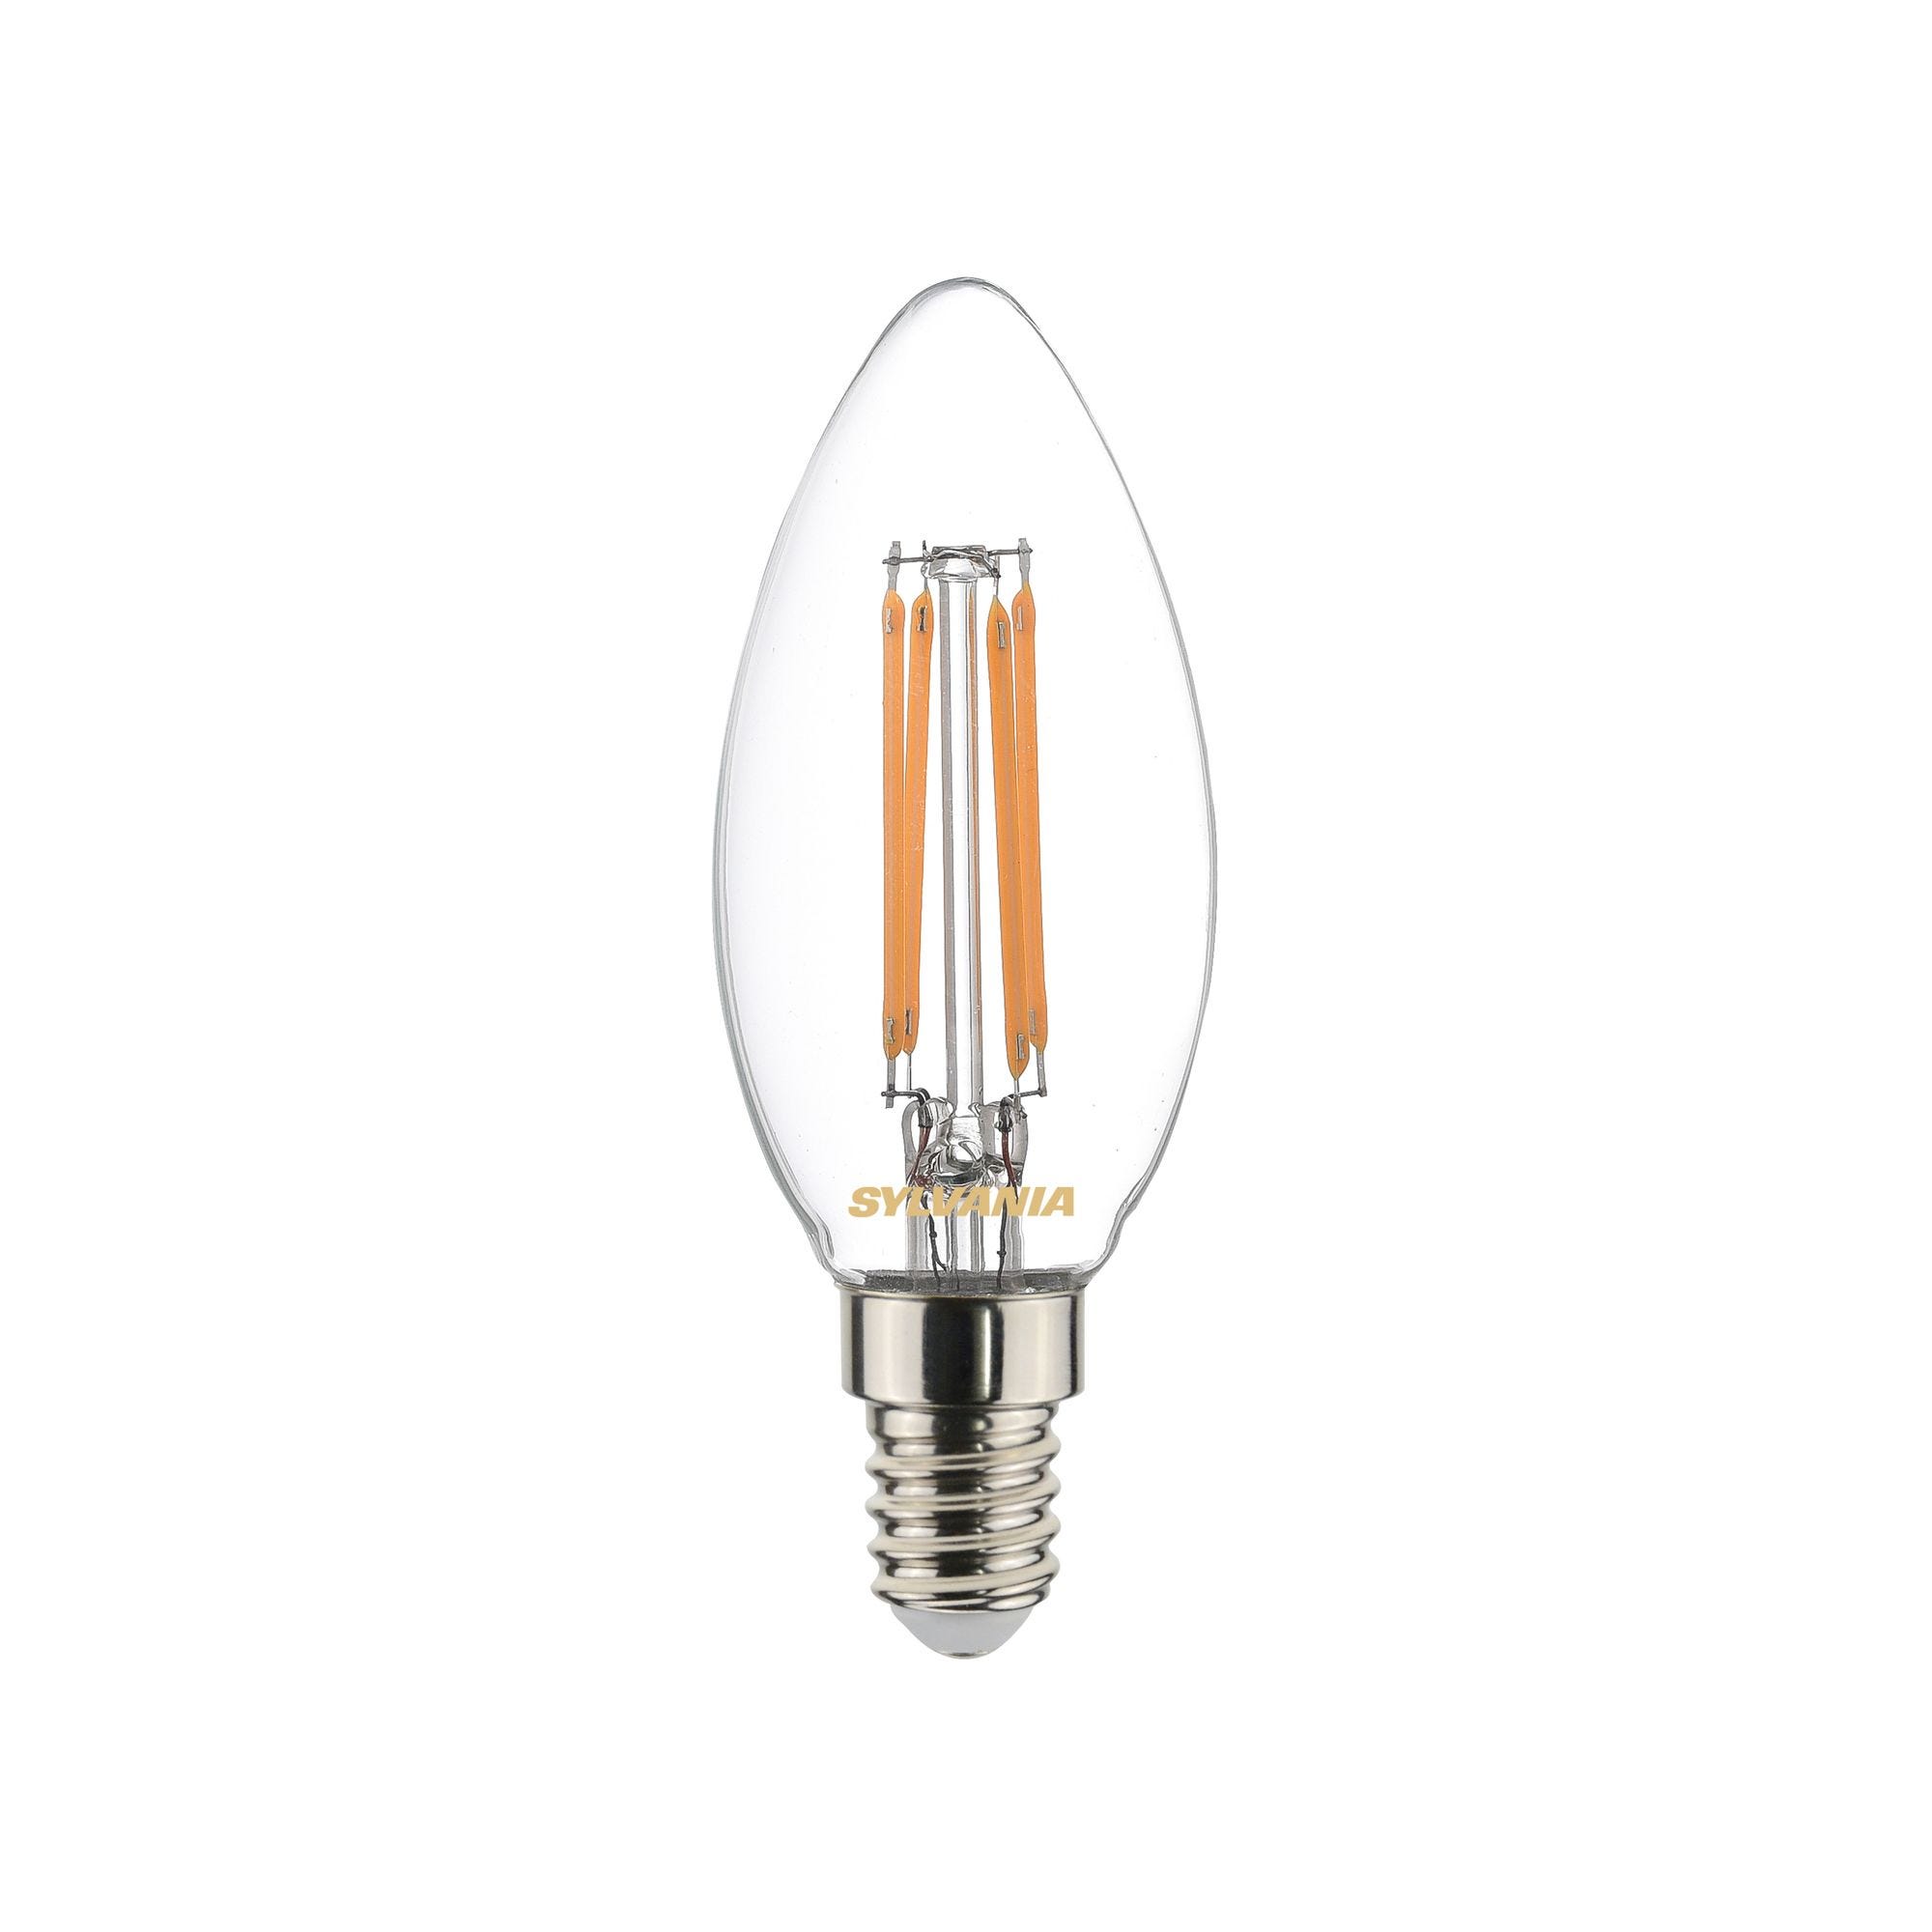 Lampe TOLEDO RETRO flamme 827 E14 4,5W 470lm nouveau modèle - SYLVANIA - 0029373 0